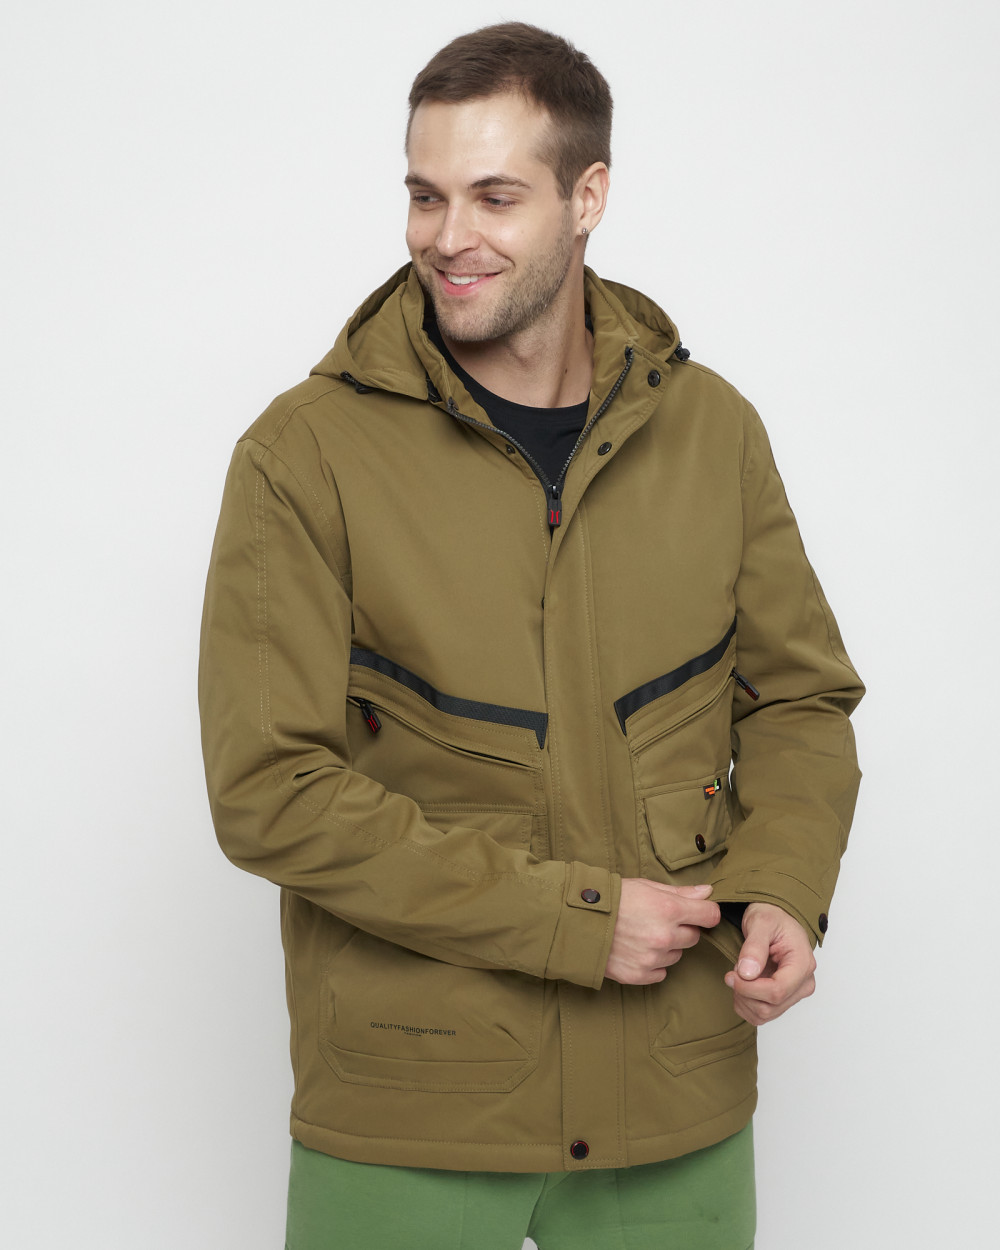 Купить куртку мужскую спортивную весеннюю оптом от производителя недорого в Москве 8596B 1